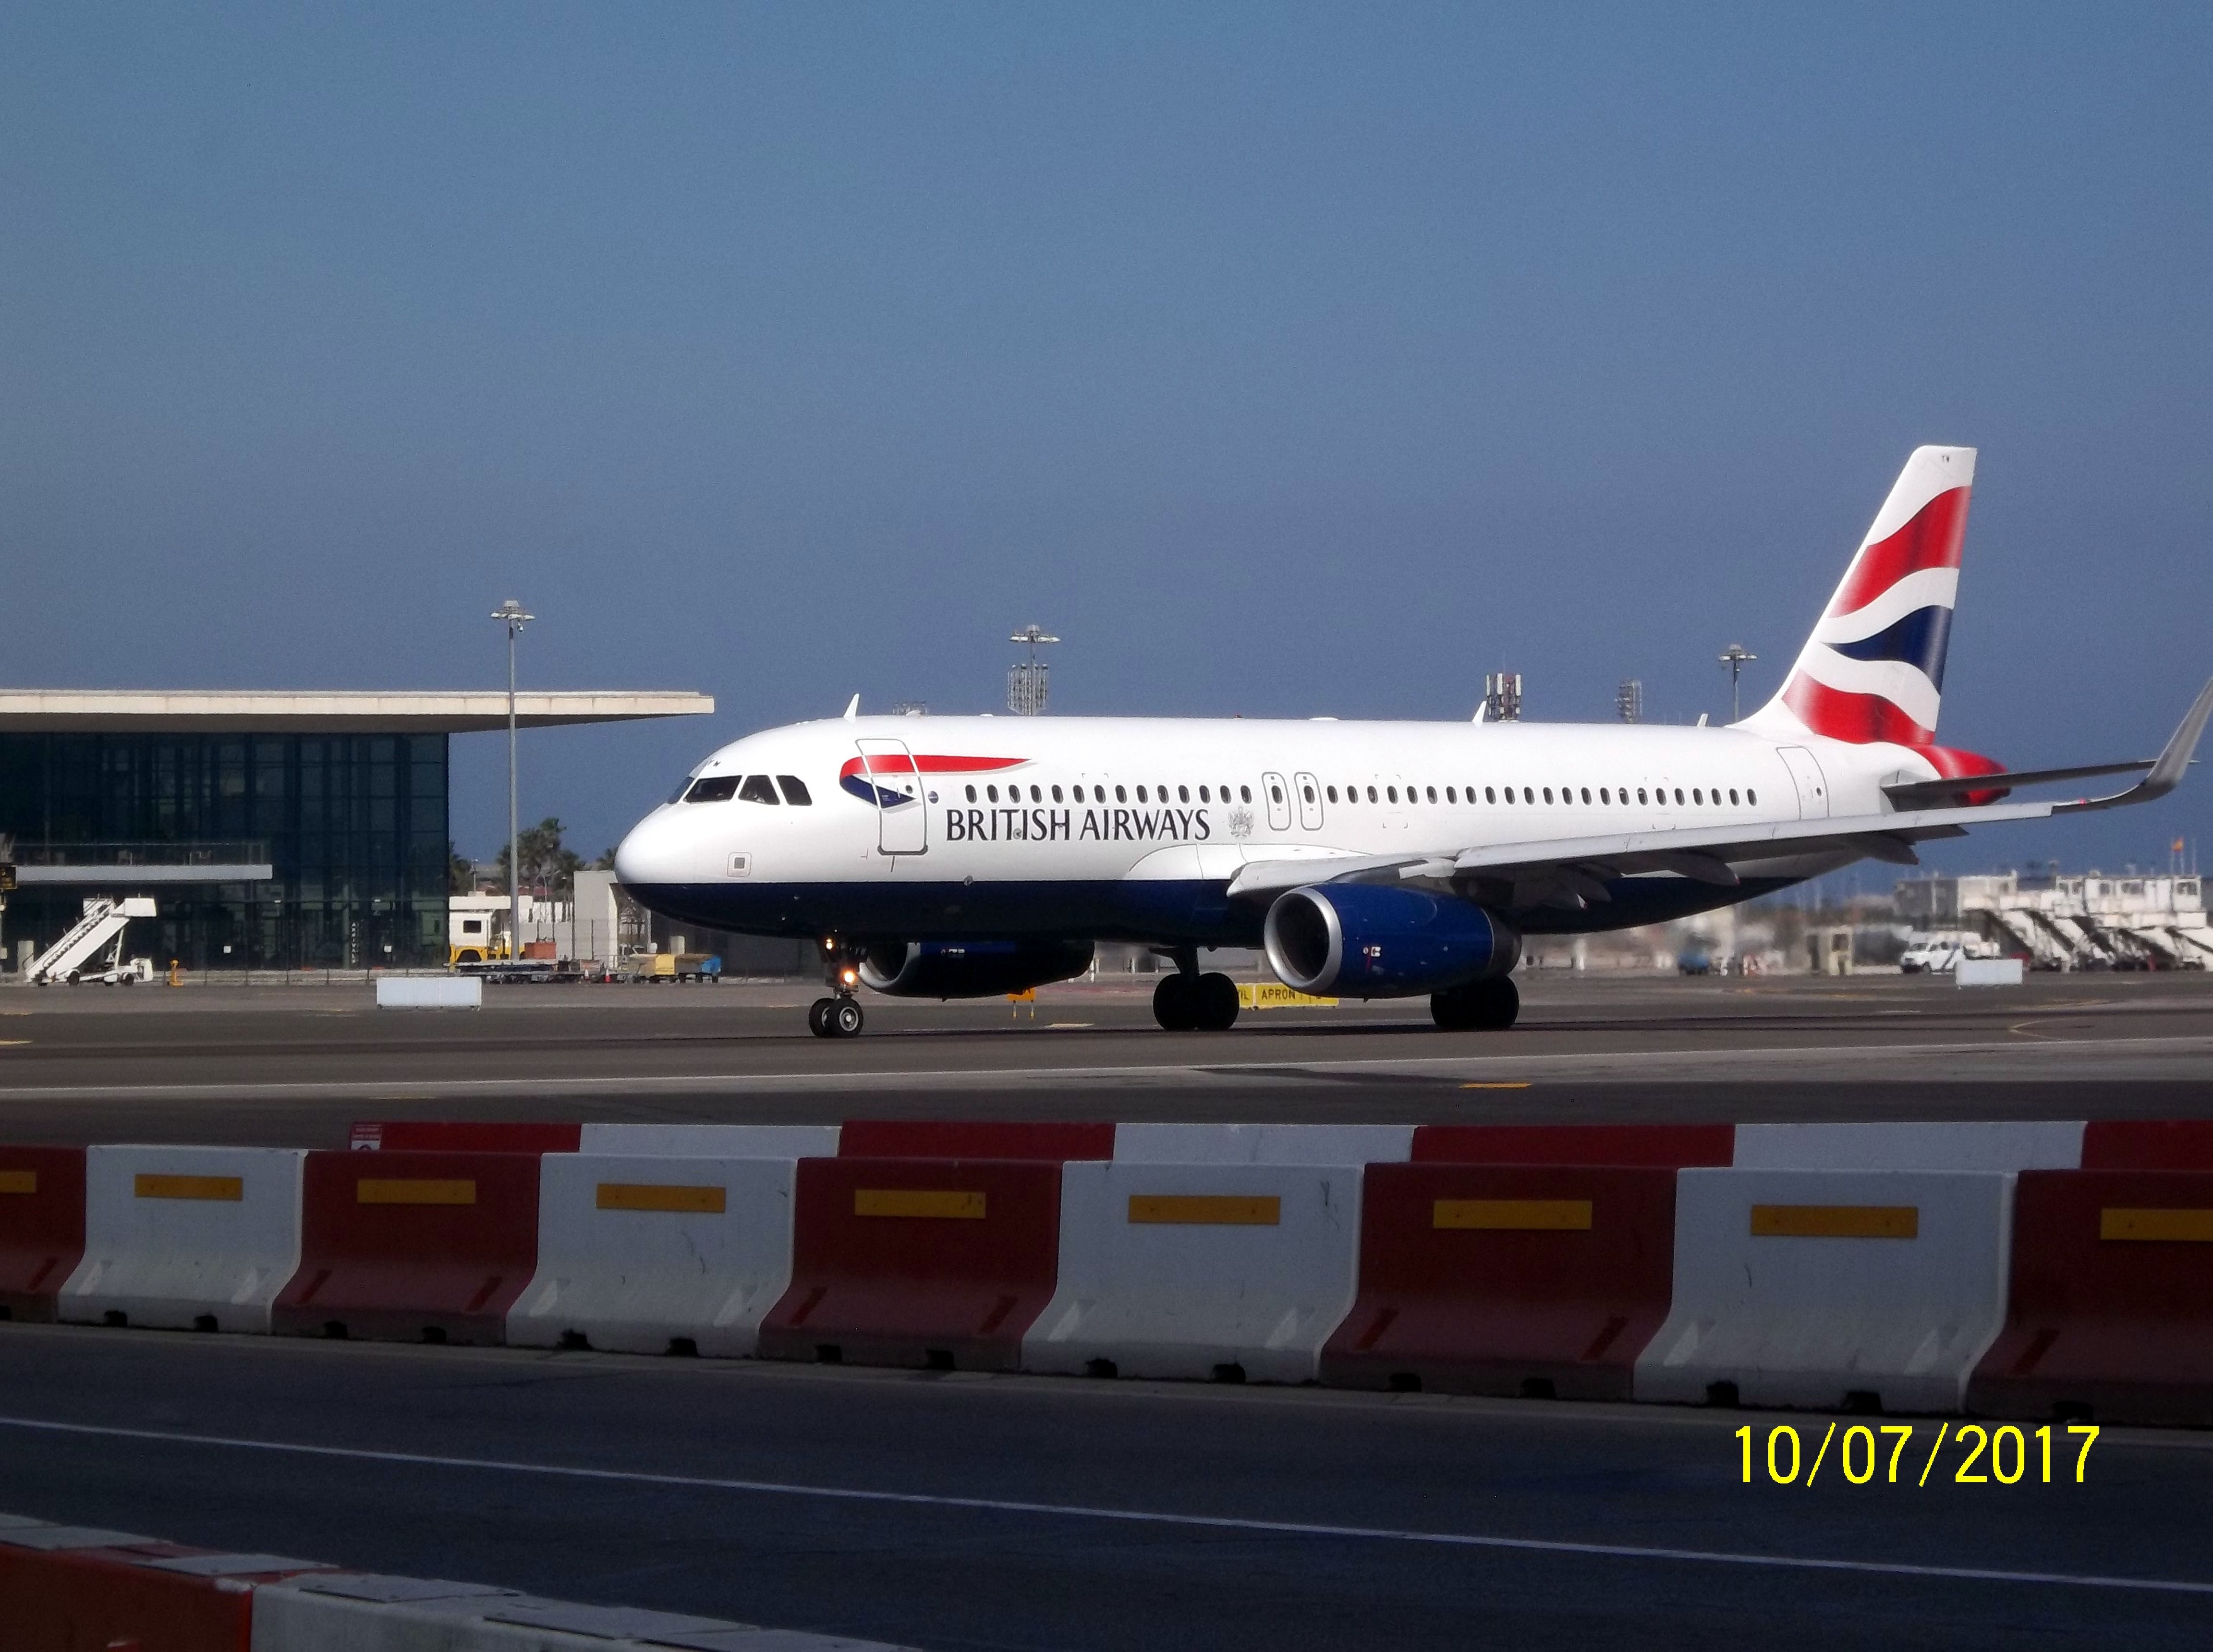 — — - BRITISH AIRWAYS DEPARTURE TO LONDON.